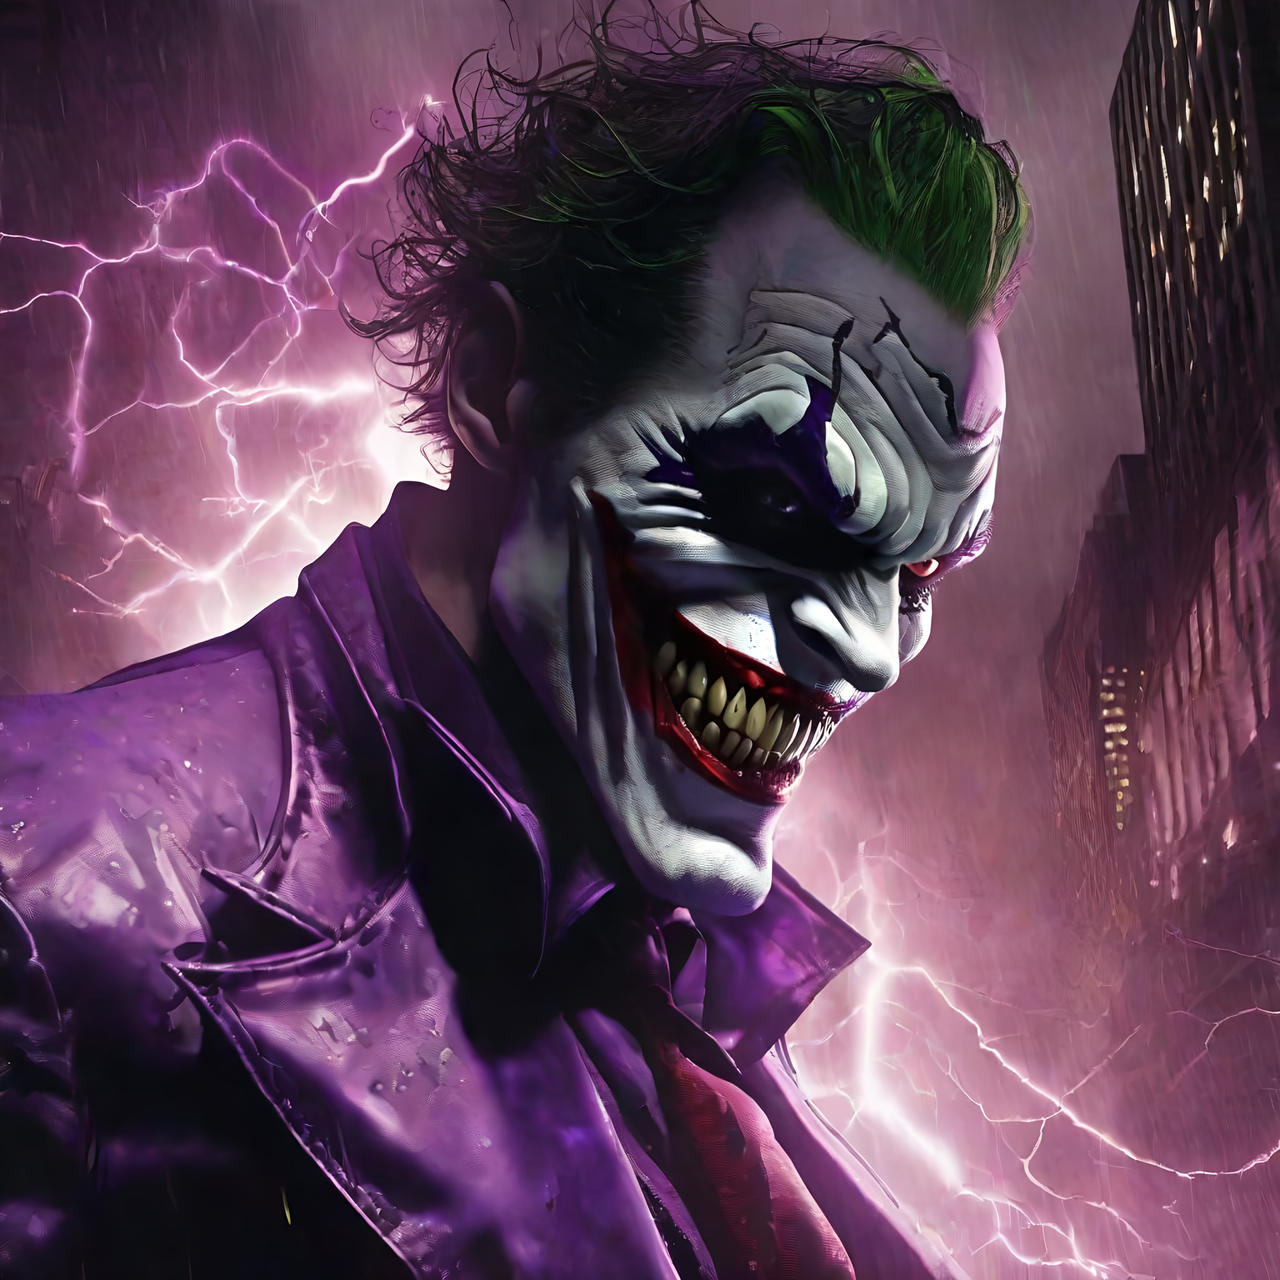 Joker #4 by QuantumReel on DeviantArt